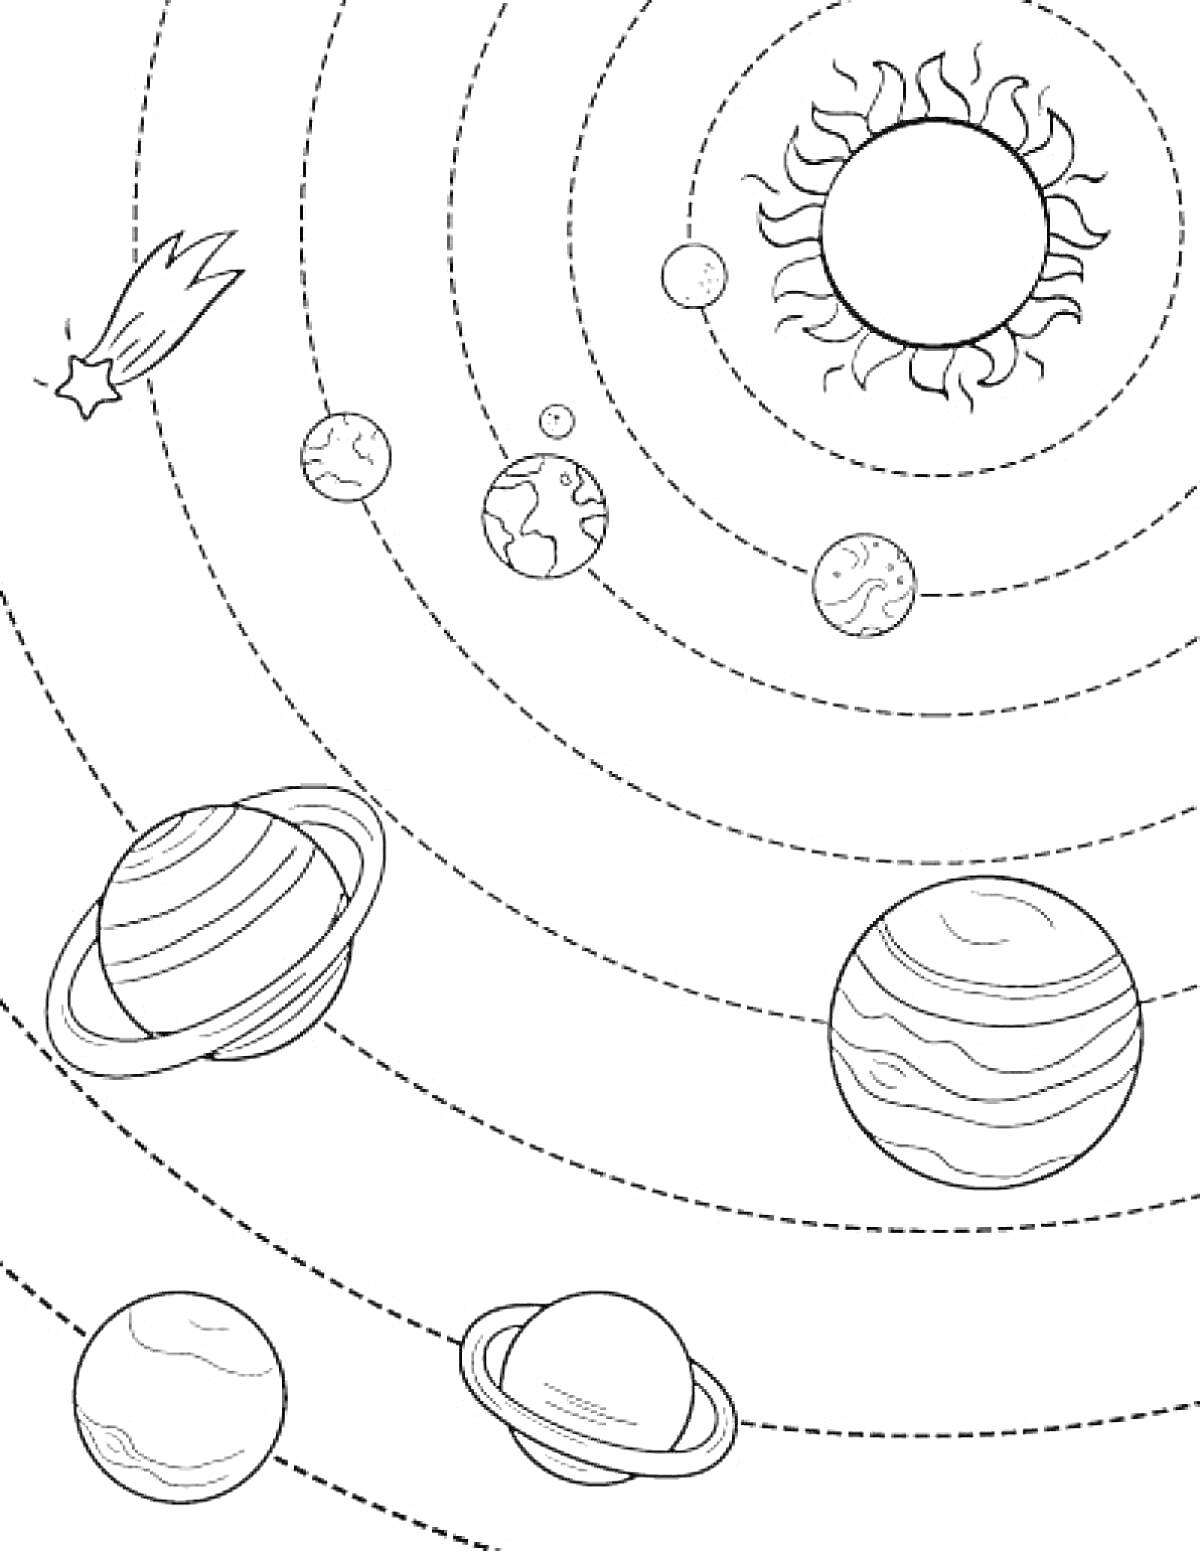 Солнечная система с планетами, солнцем и кометой